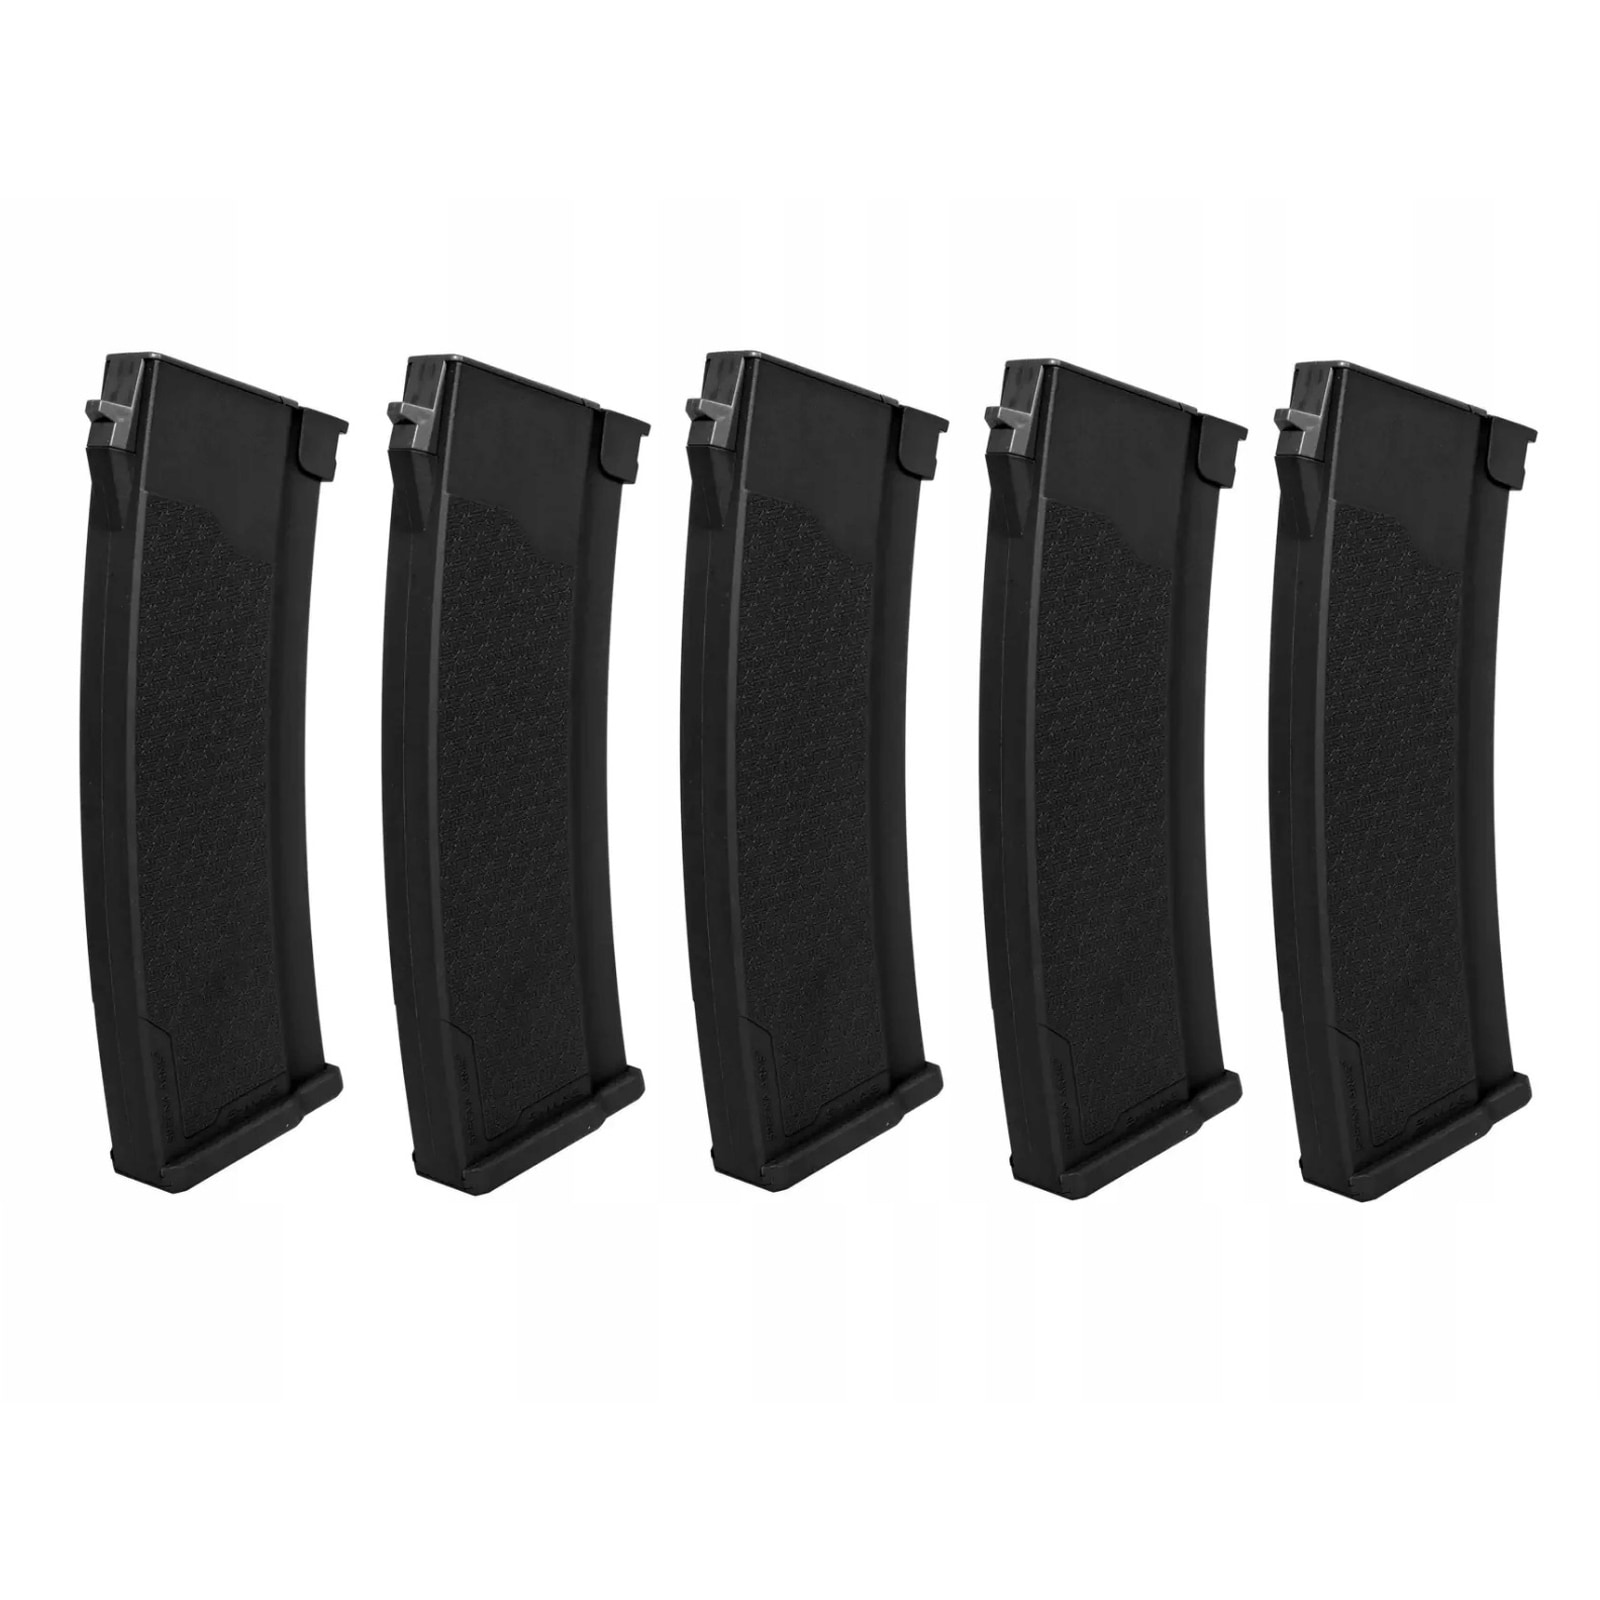 Набір 5 магазинів Hi-Cap Specna Arms S-Mag для реплік з серії J - Black